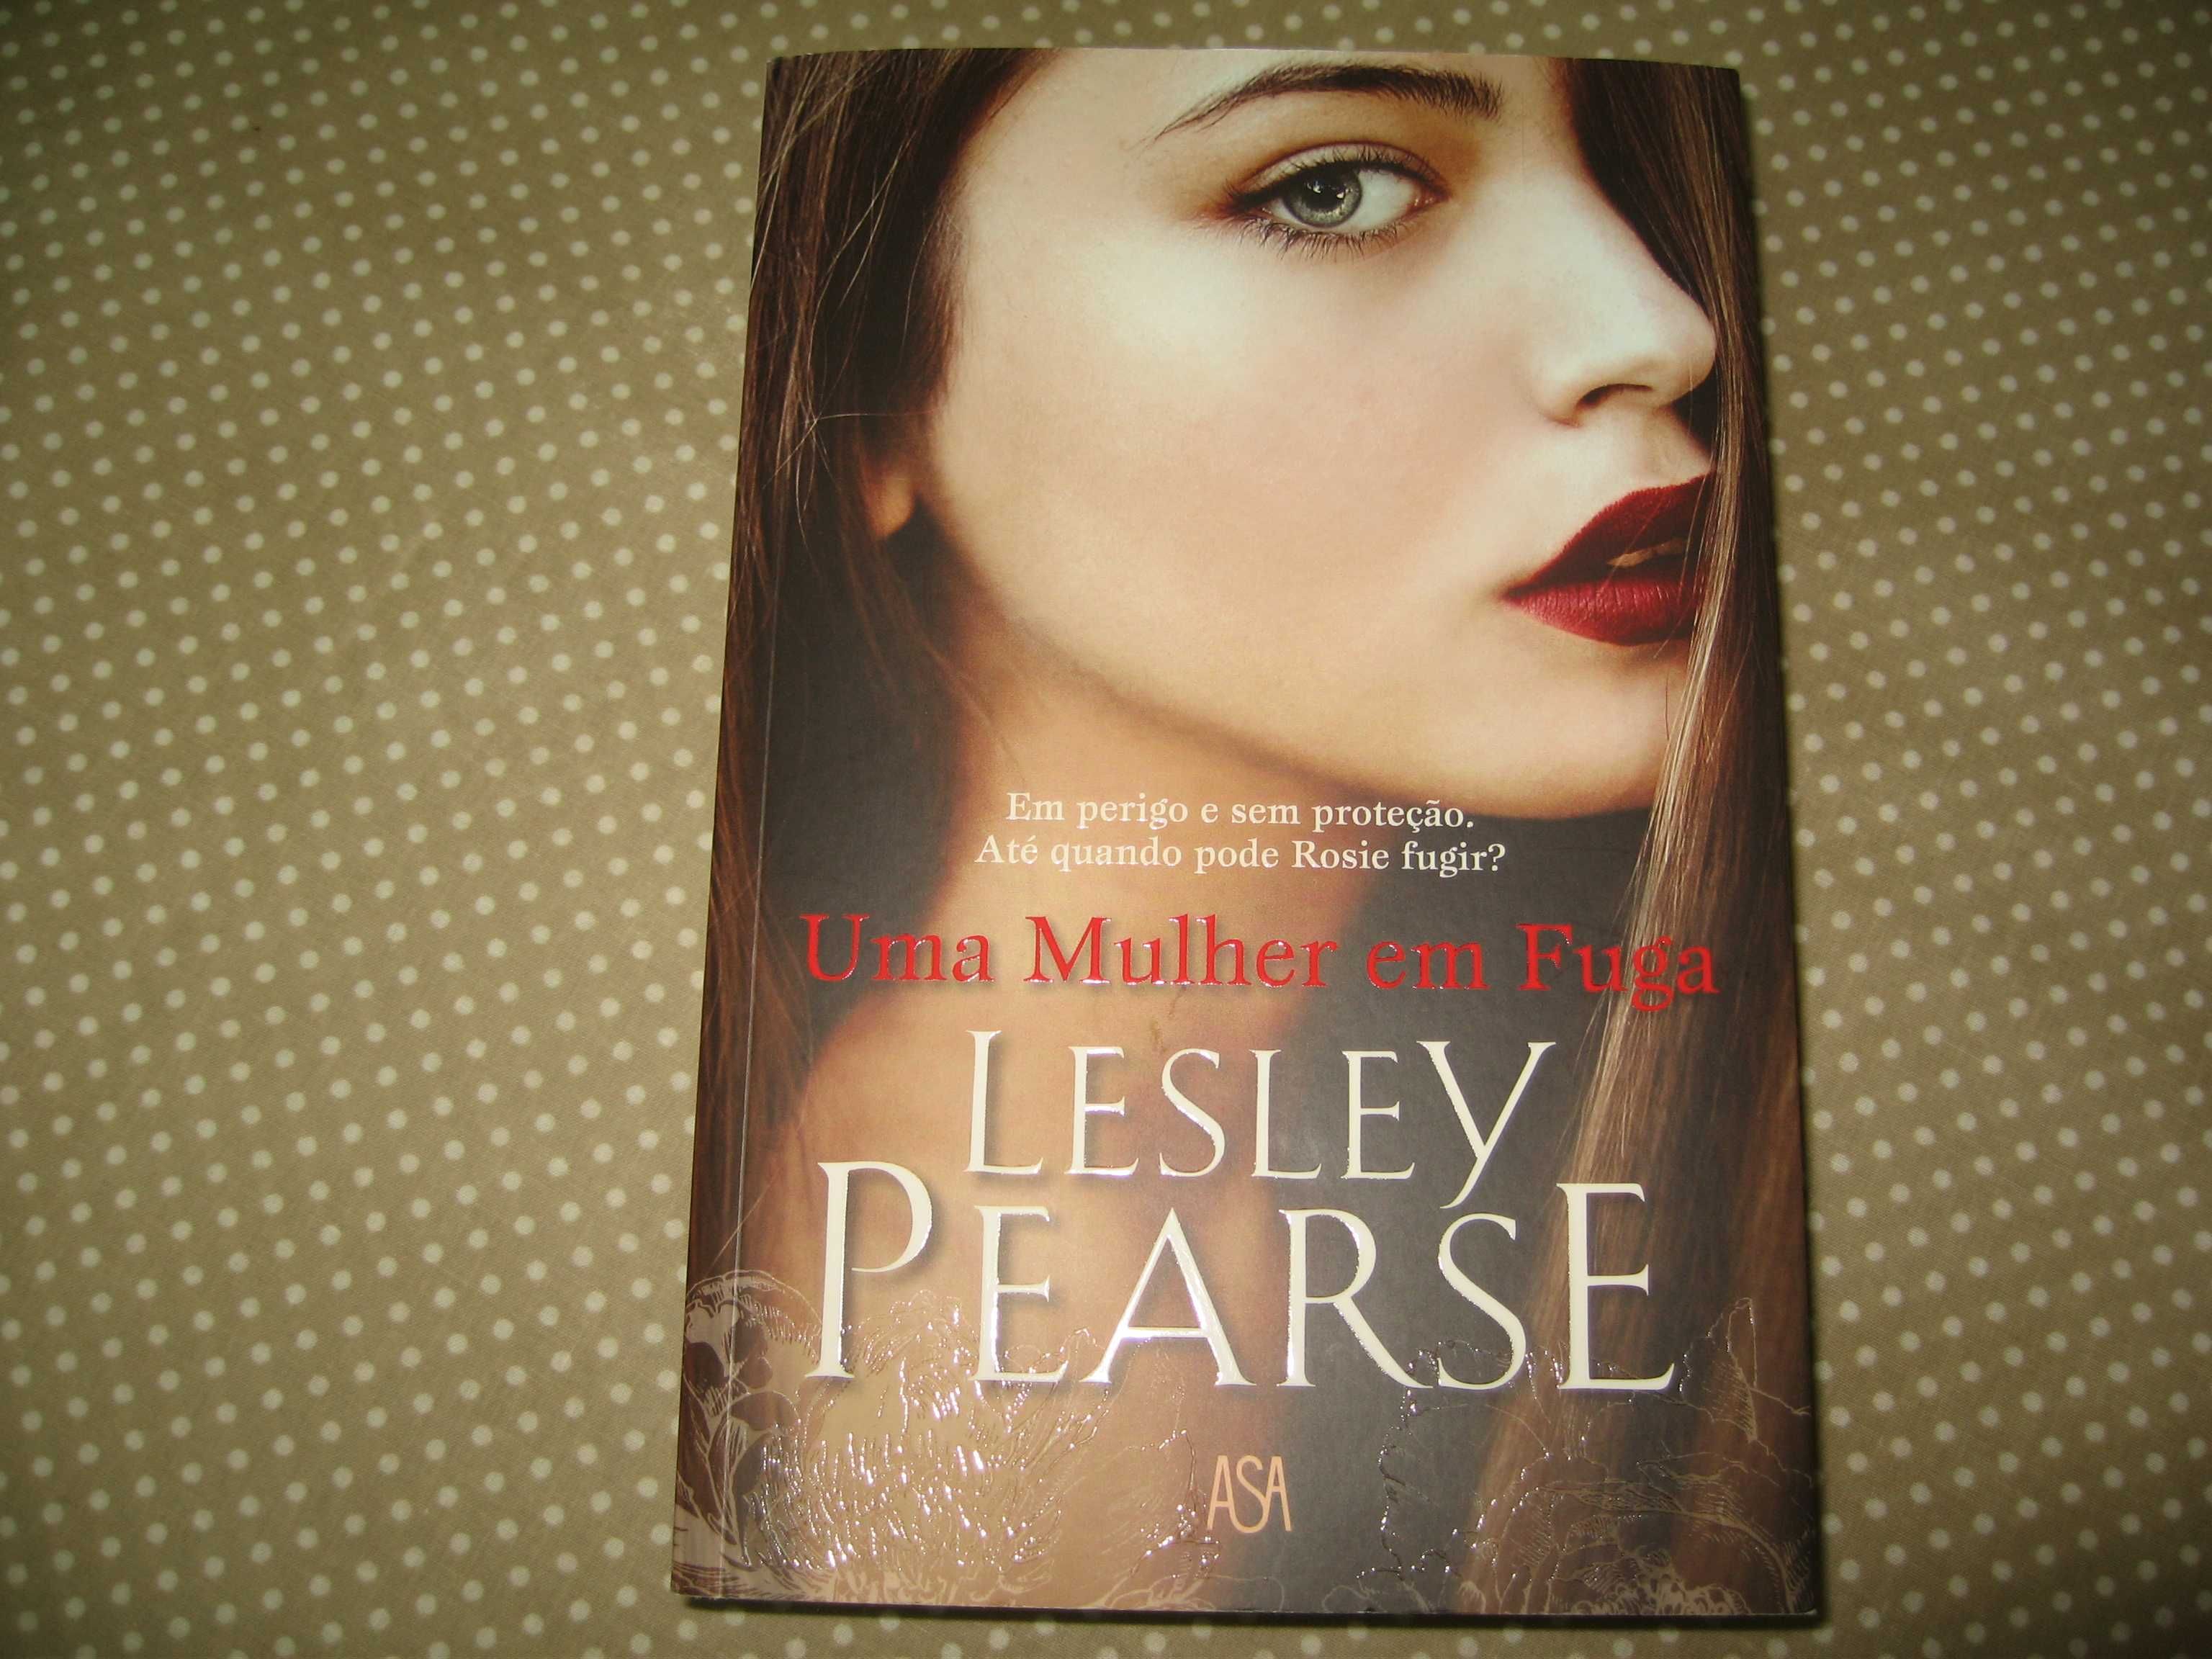 Livro de Lesley Pearse - Uma mulher em fuga